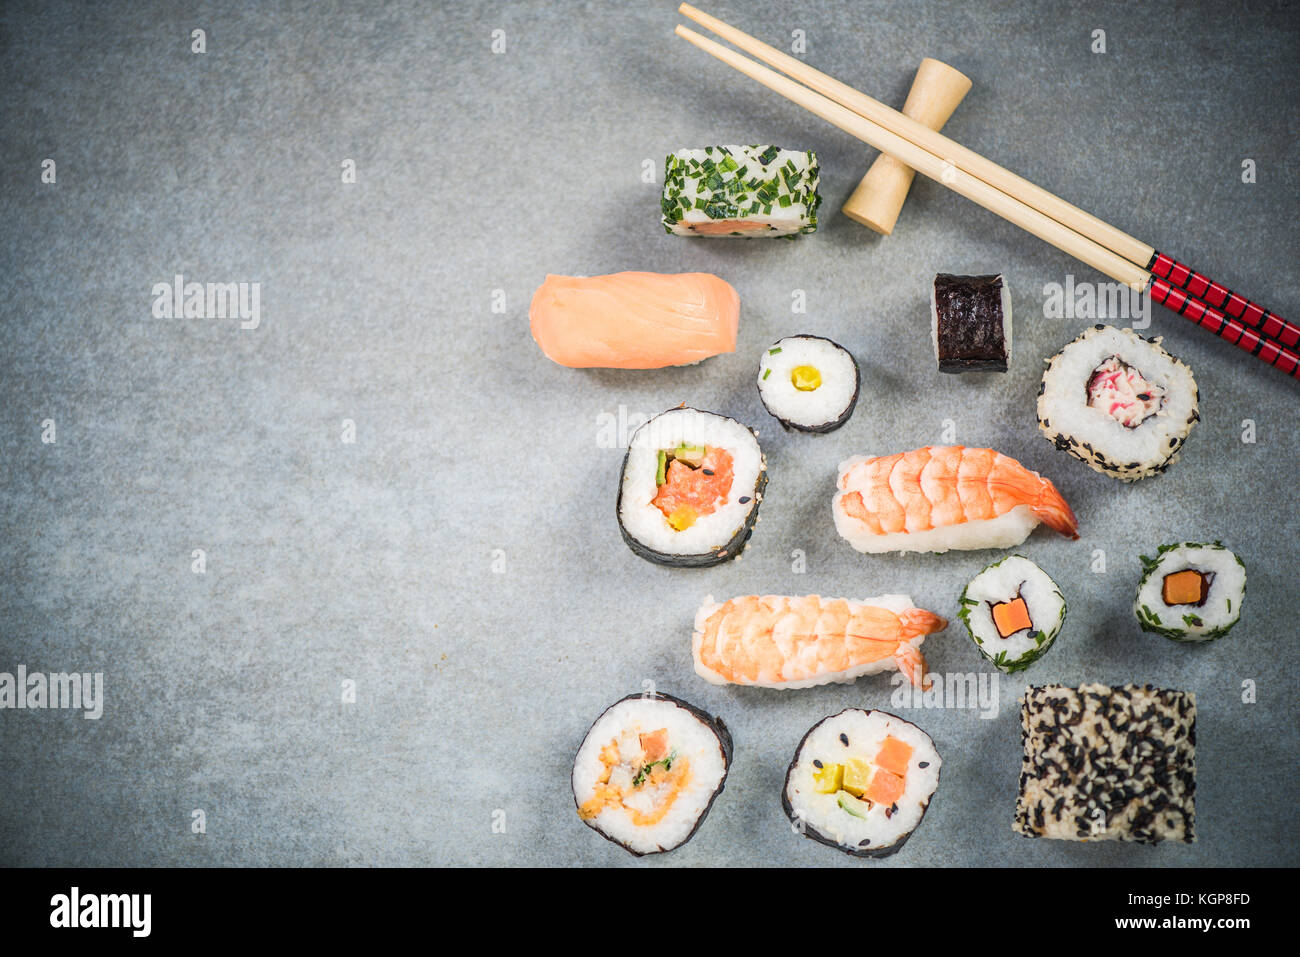 Japanese or asian sushi border background. Stock Photo